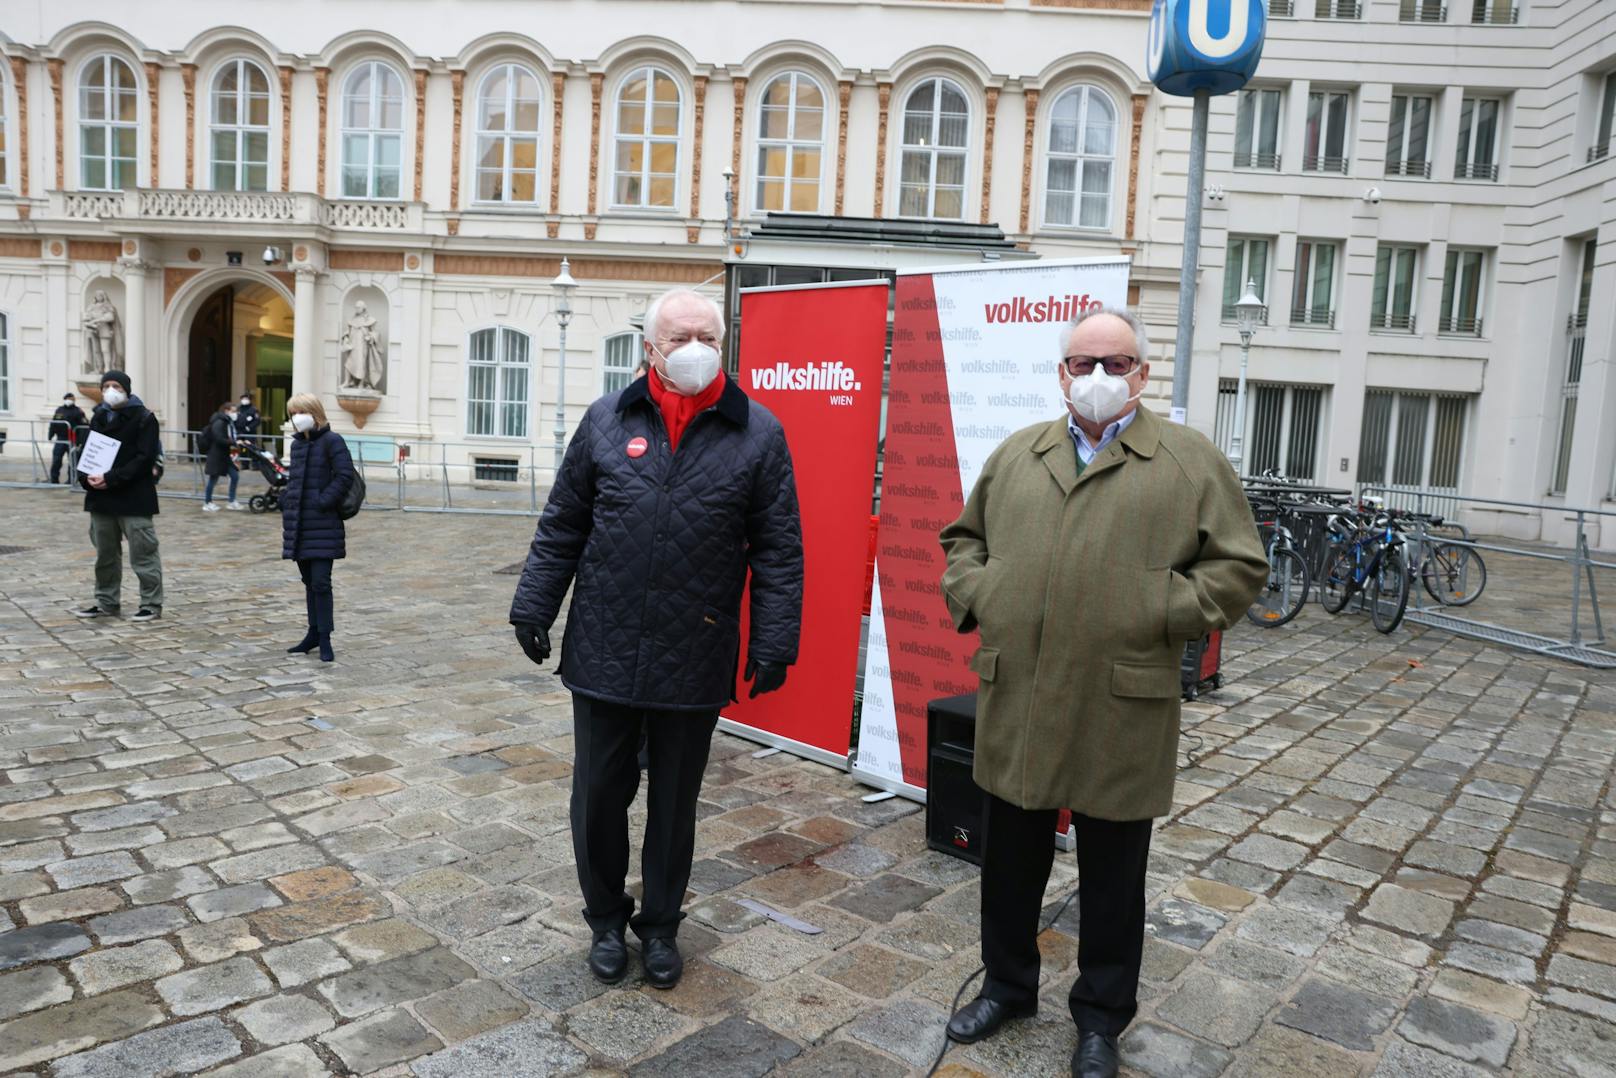 Initiiert wurde die Aktion von Alt-Bürgermeister und Ehrenpräsident der Volkshilfe Wien Michael Häupl (links, hier mit dem Präsidenten des Verein Menschenwürde Österreich Christian Konrad).